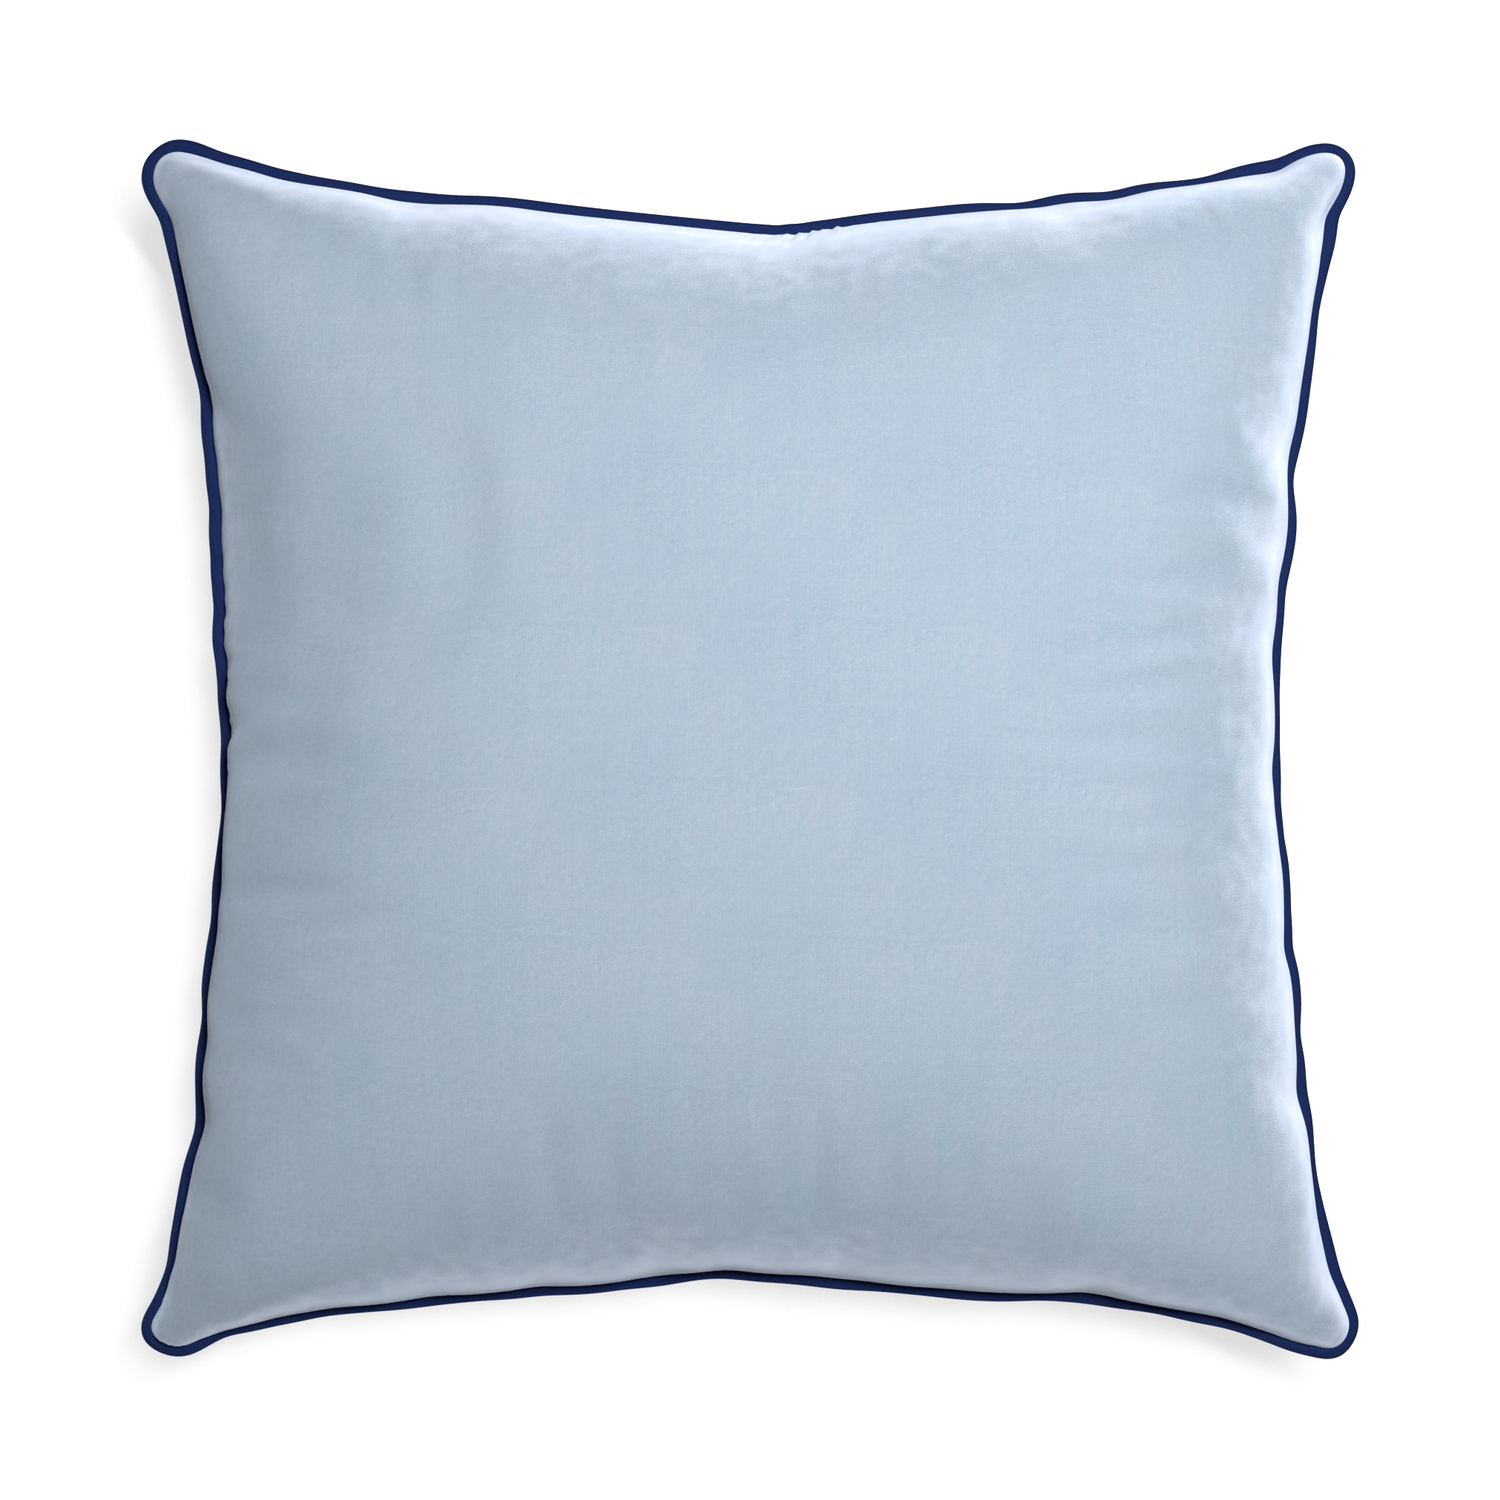 Euro-sham sky velvet custom pillow with midnight piping on white background